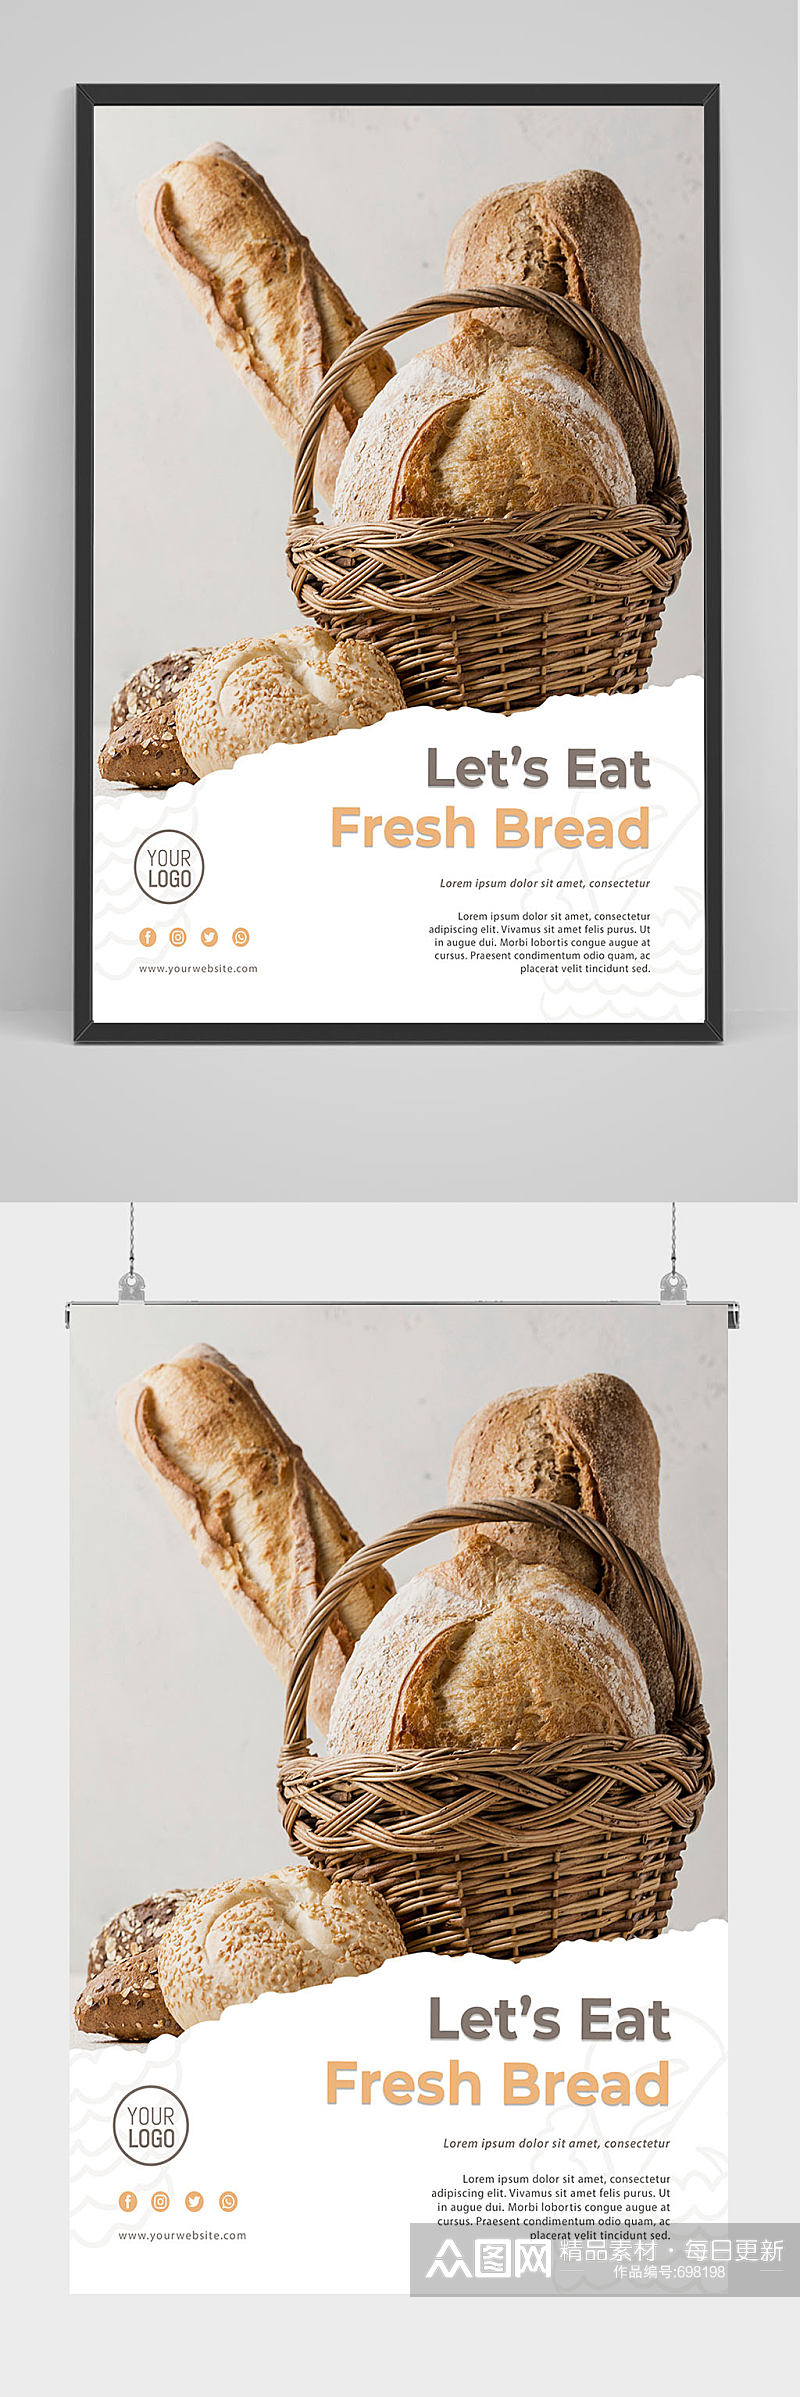 大气简洁美食面包海报设计素材